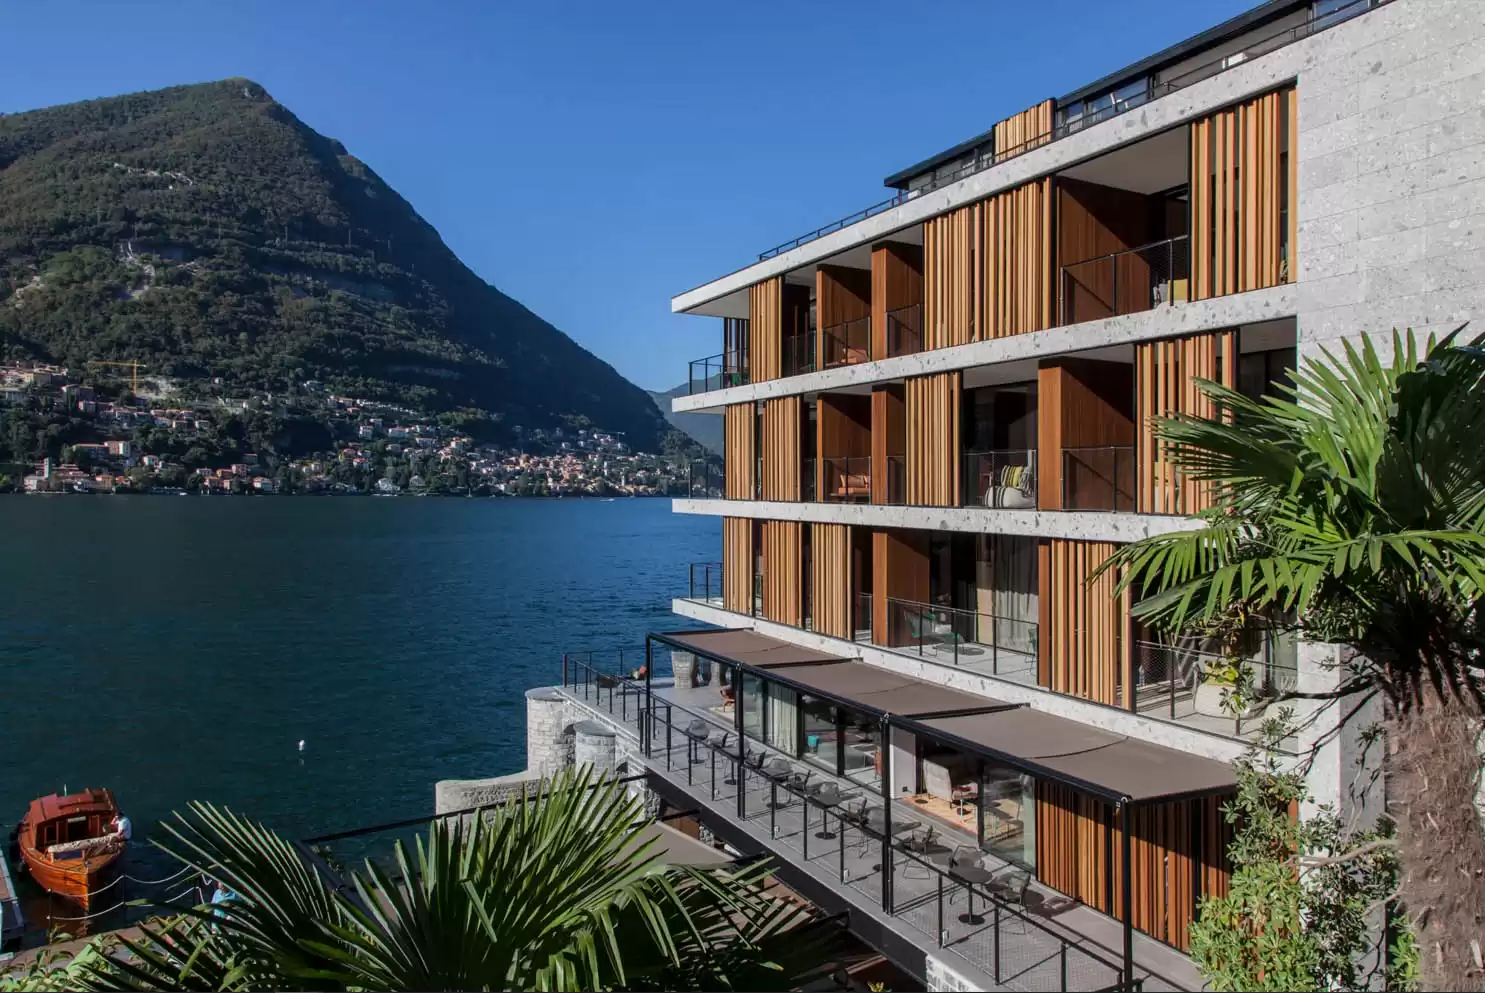 Verão Europeu: hotel Il Sereno reabre em 15 de março com novidades no Lago di Como